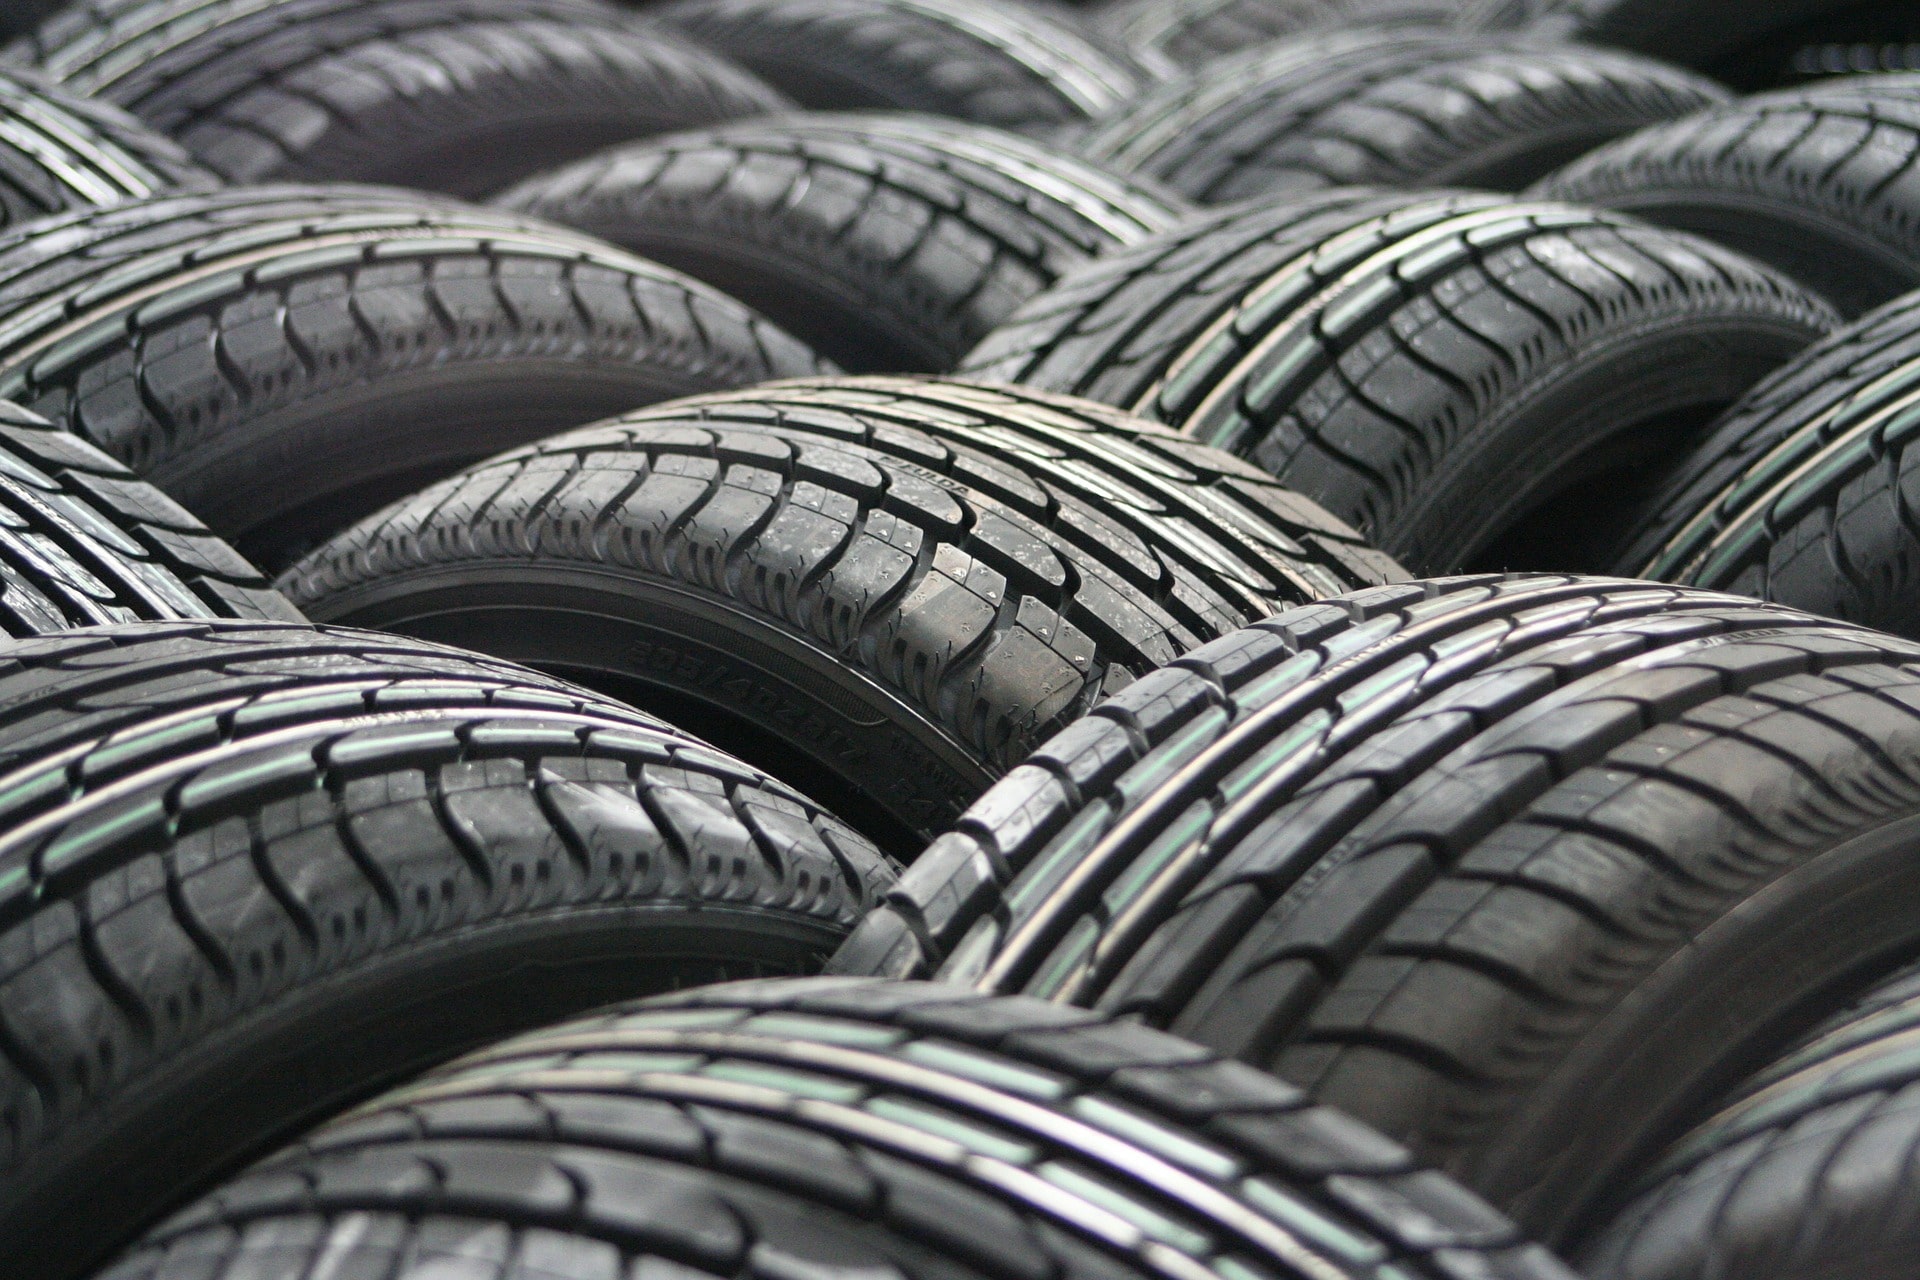 Lettura dei barcode sugli pneumatici: la tecnologia di Cognex allo stabilimento Michelin di Spinetta Marengo